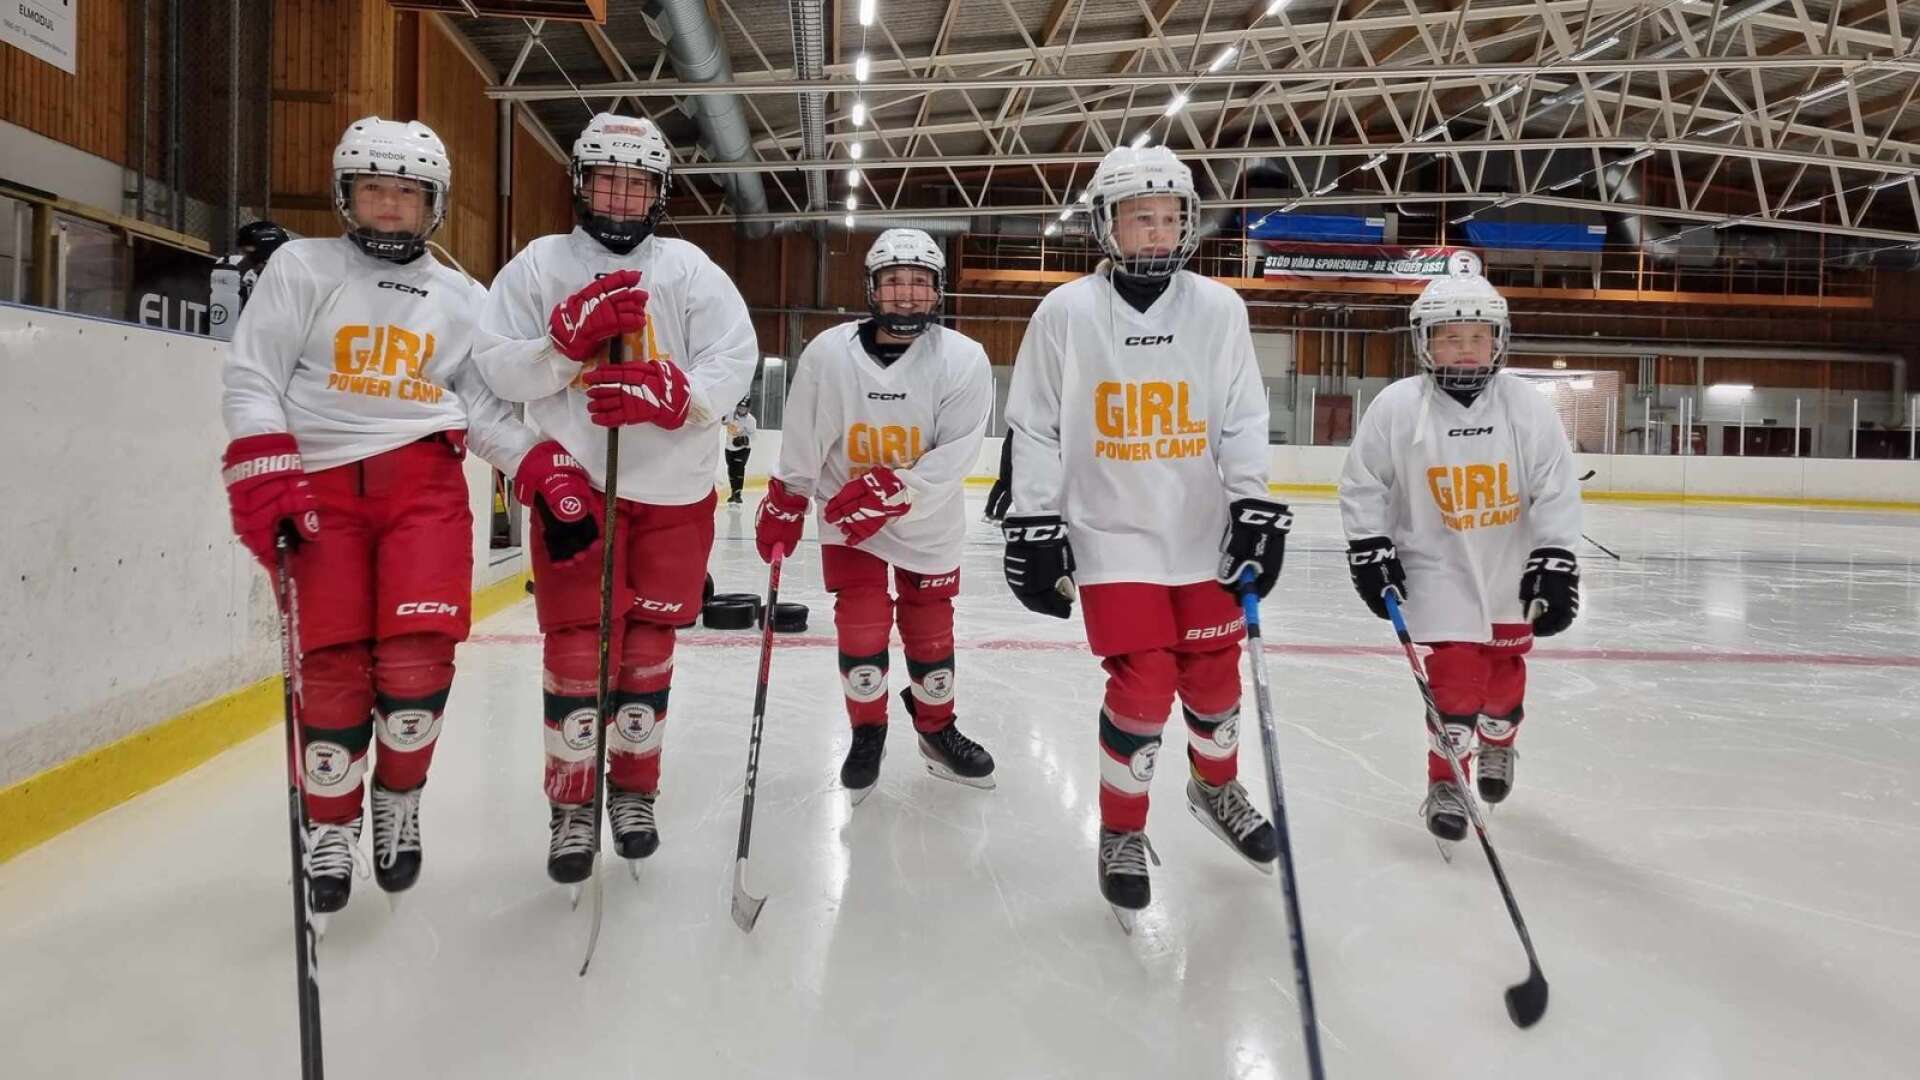 Ebba, Lovis, Mika, Signe och Edith från Kristinehamns HT trivs på isen, även mitt i sommaren. Girl power camp i Björkhallen är en återkommande tradition som tjejerna uppskattar mycket.